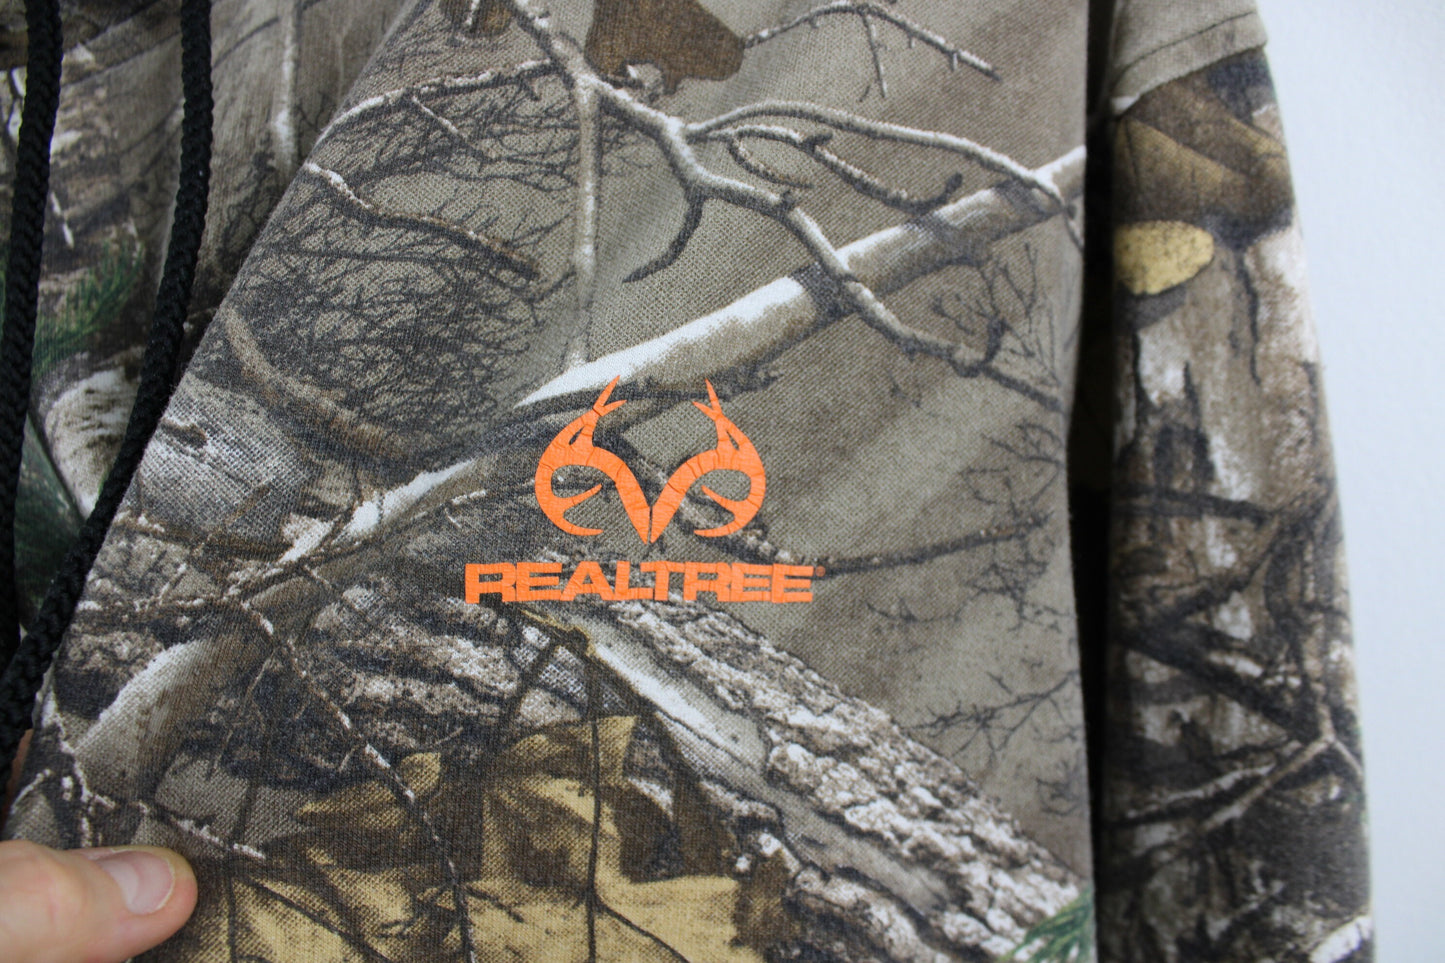 Realtree Hoodie / Vintage 90s Camouflage Hunting Hoody Sweater / Hunter Hooded Sweatshirt Clothing